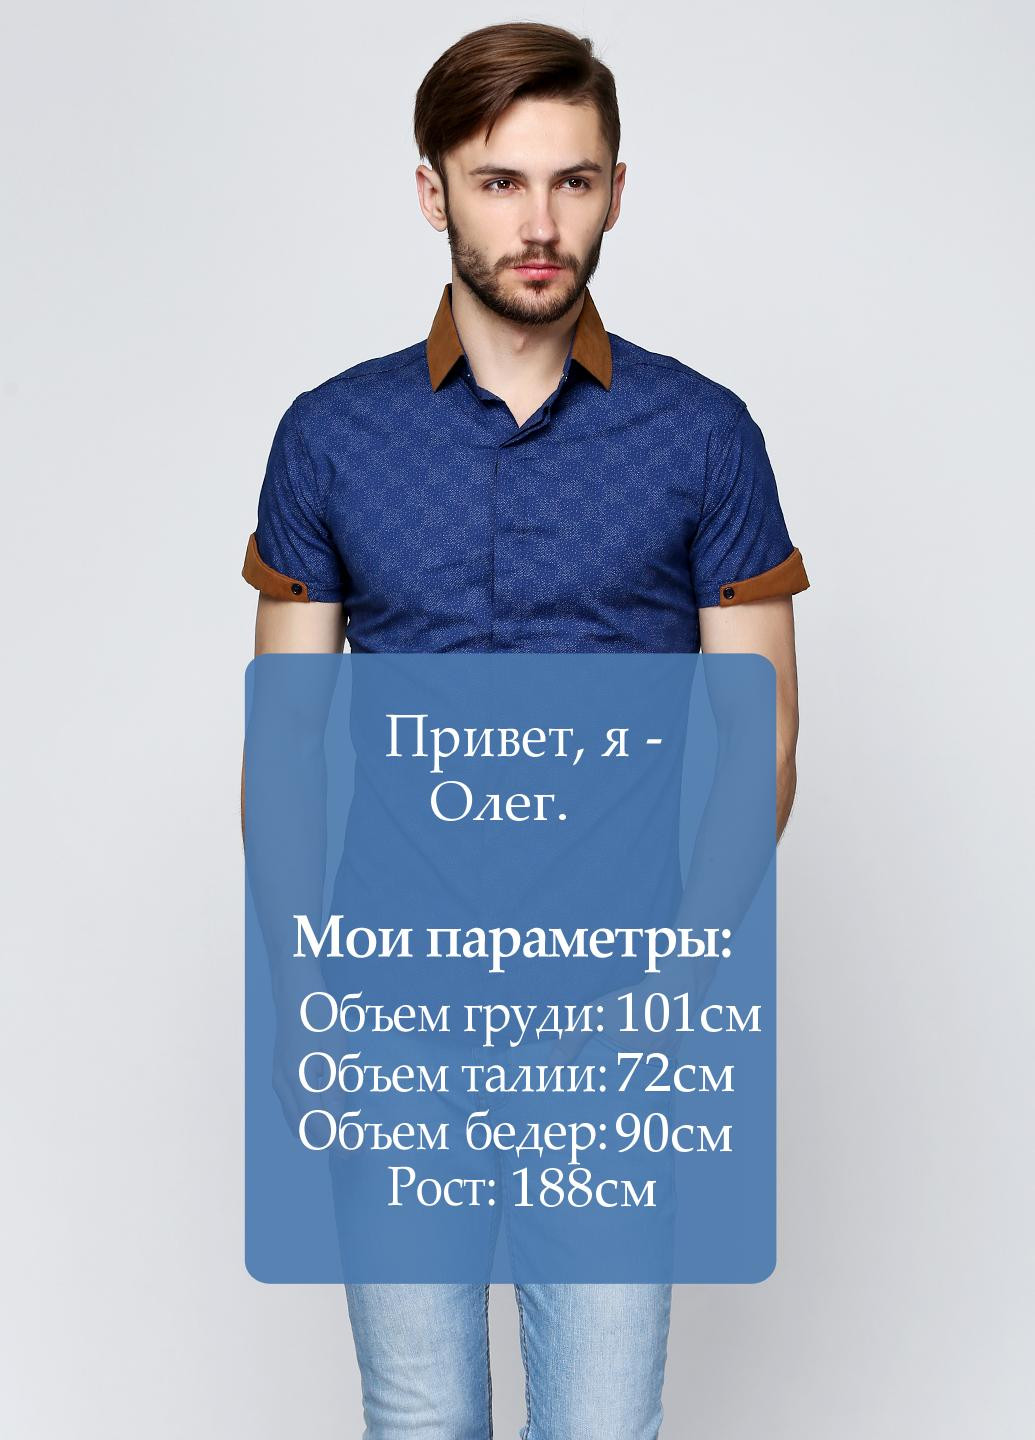 Темно-синяя кэжуал рубашка с геометрическим узором Rubaska